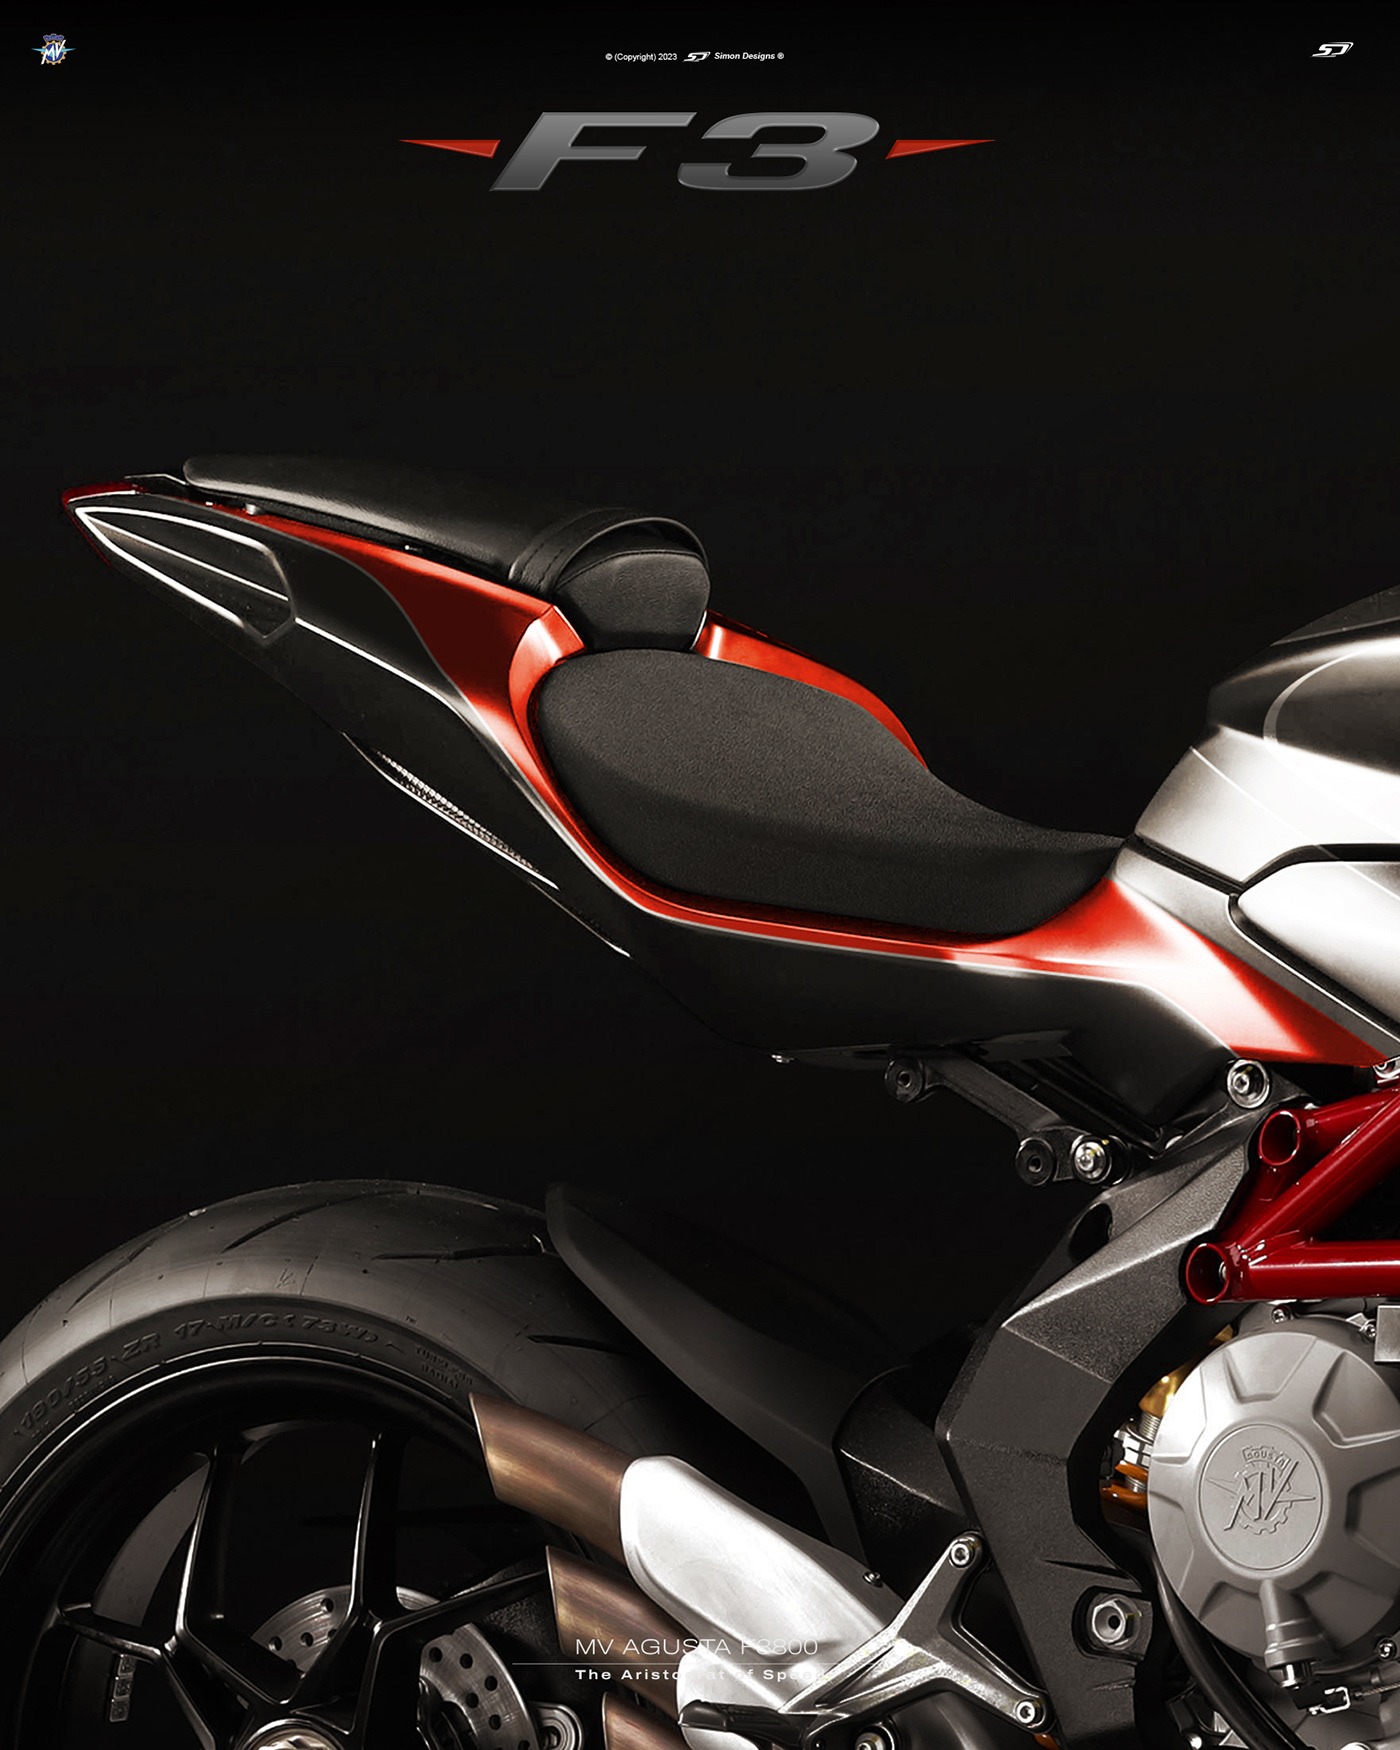 Simon Designs designer motorcycle art mv agusta tailor made MV Agusta F3 simon exclusiva